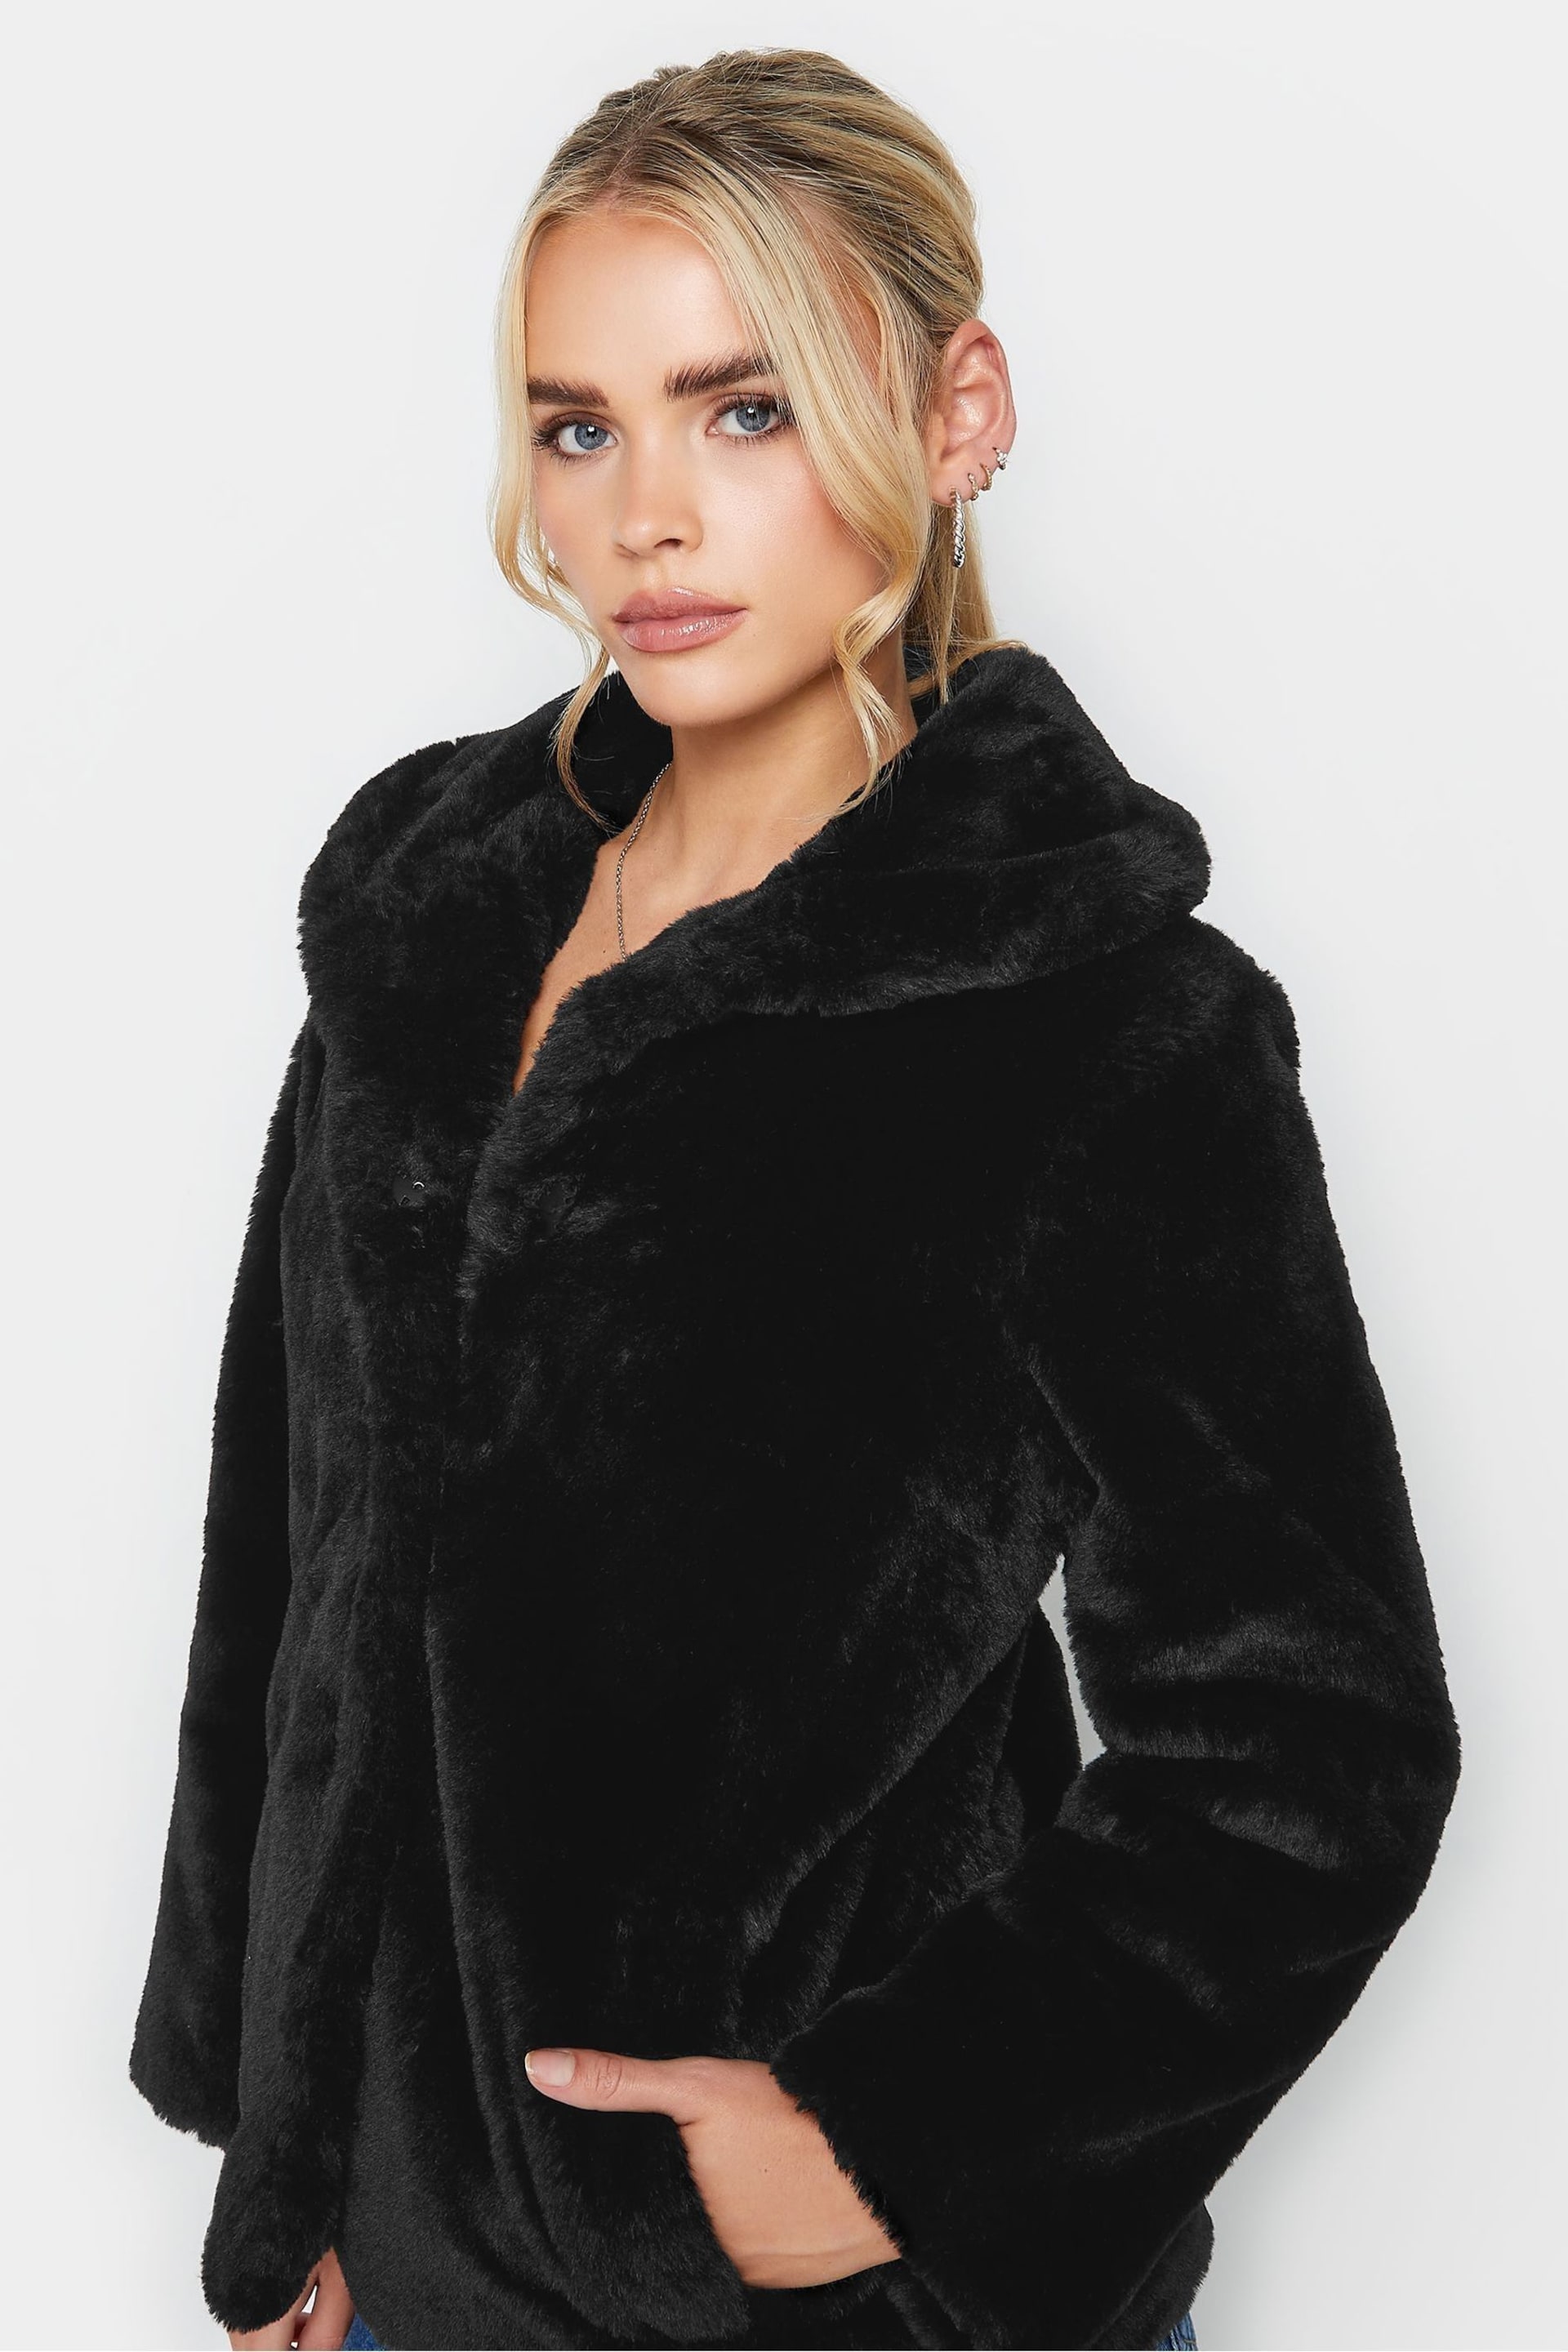 PixieGirl Petite Black Plush Faux Fur Coat - Image 4 of 4